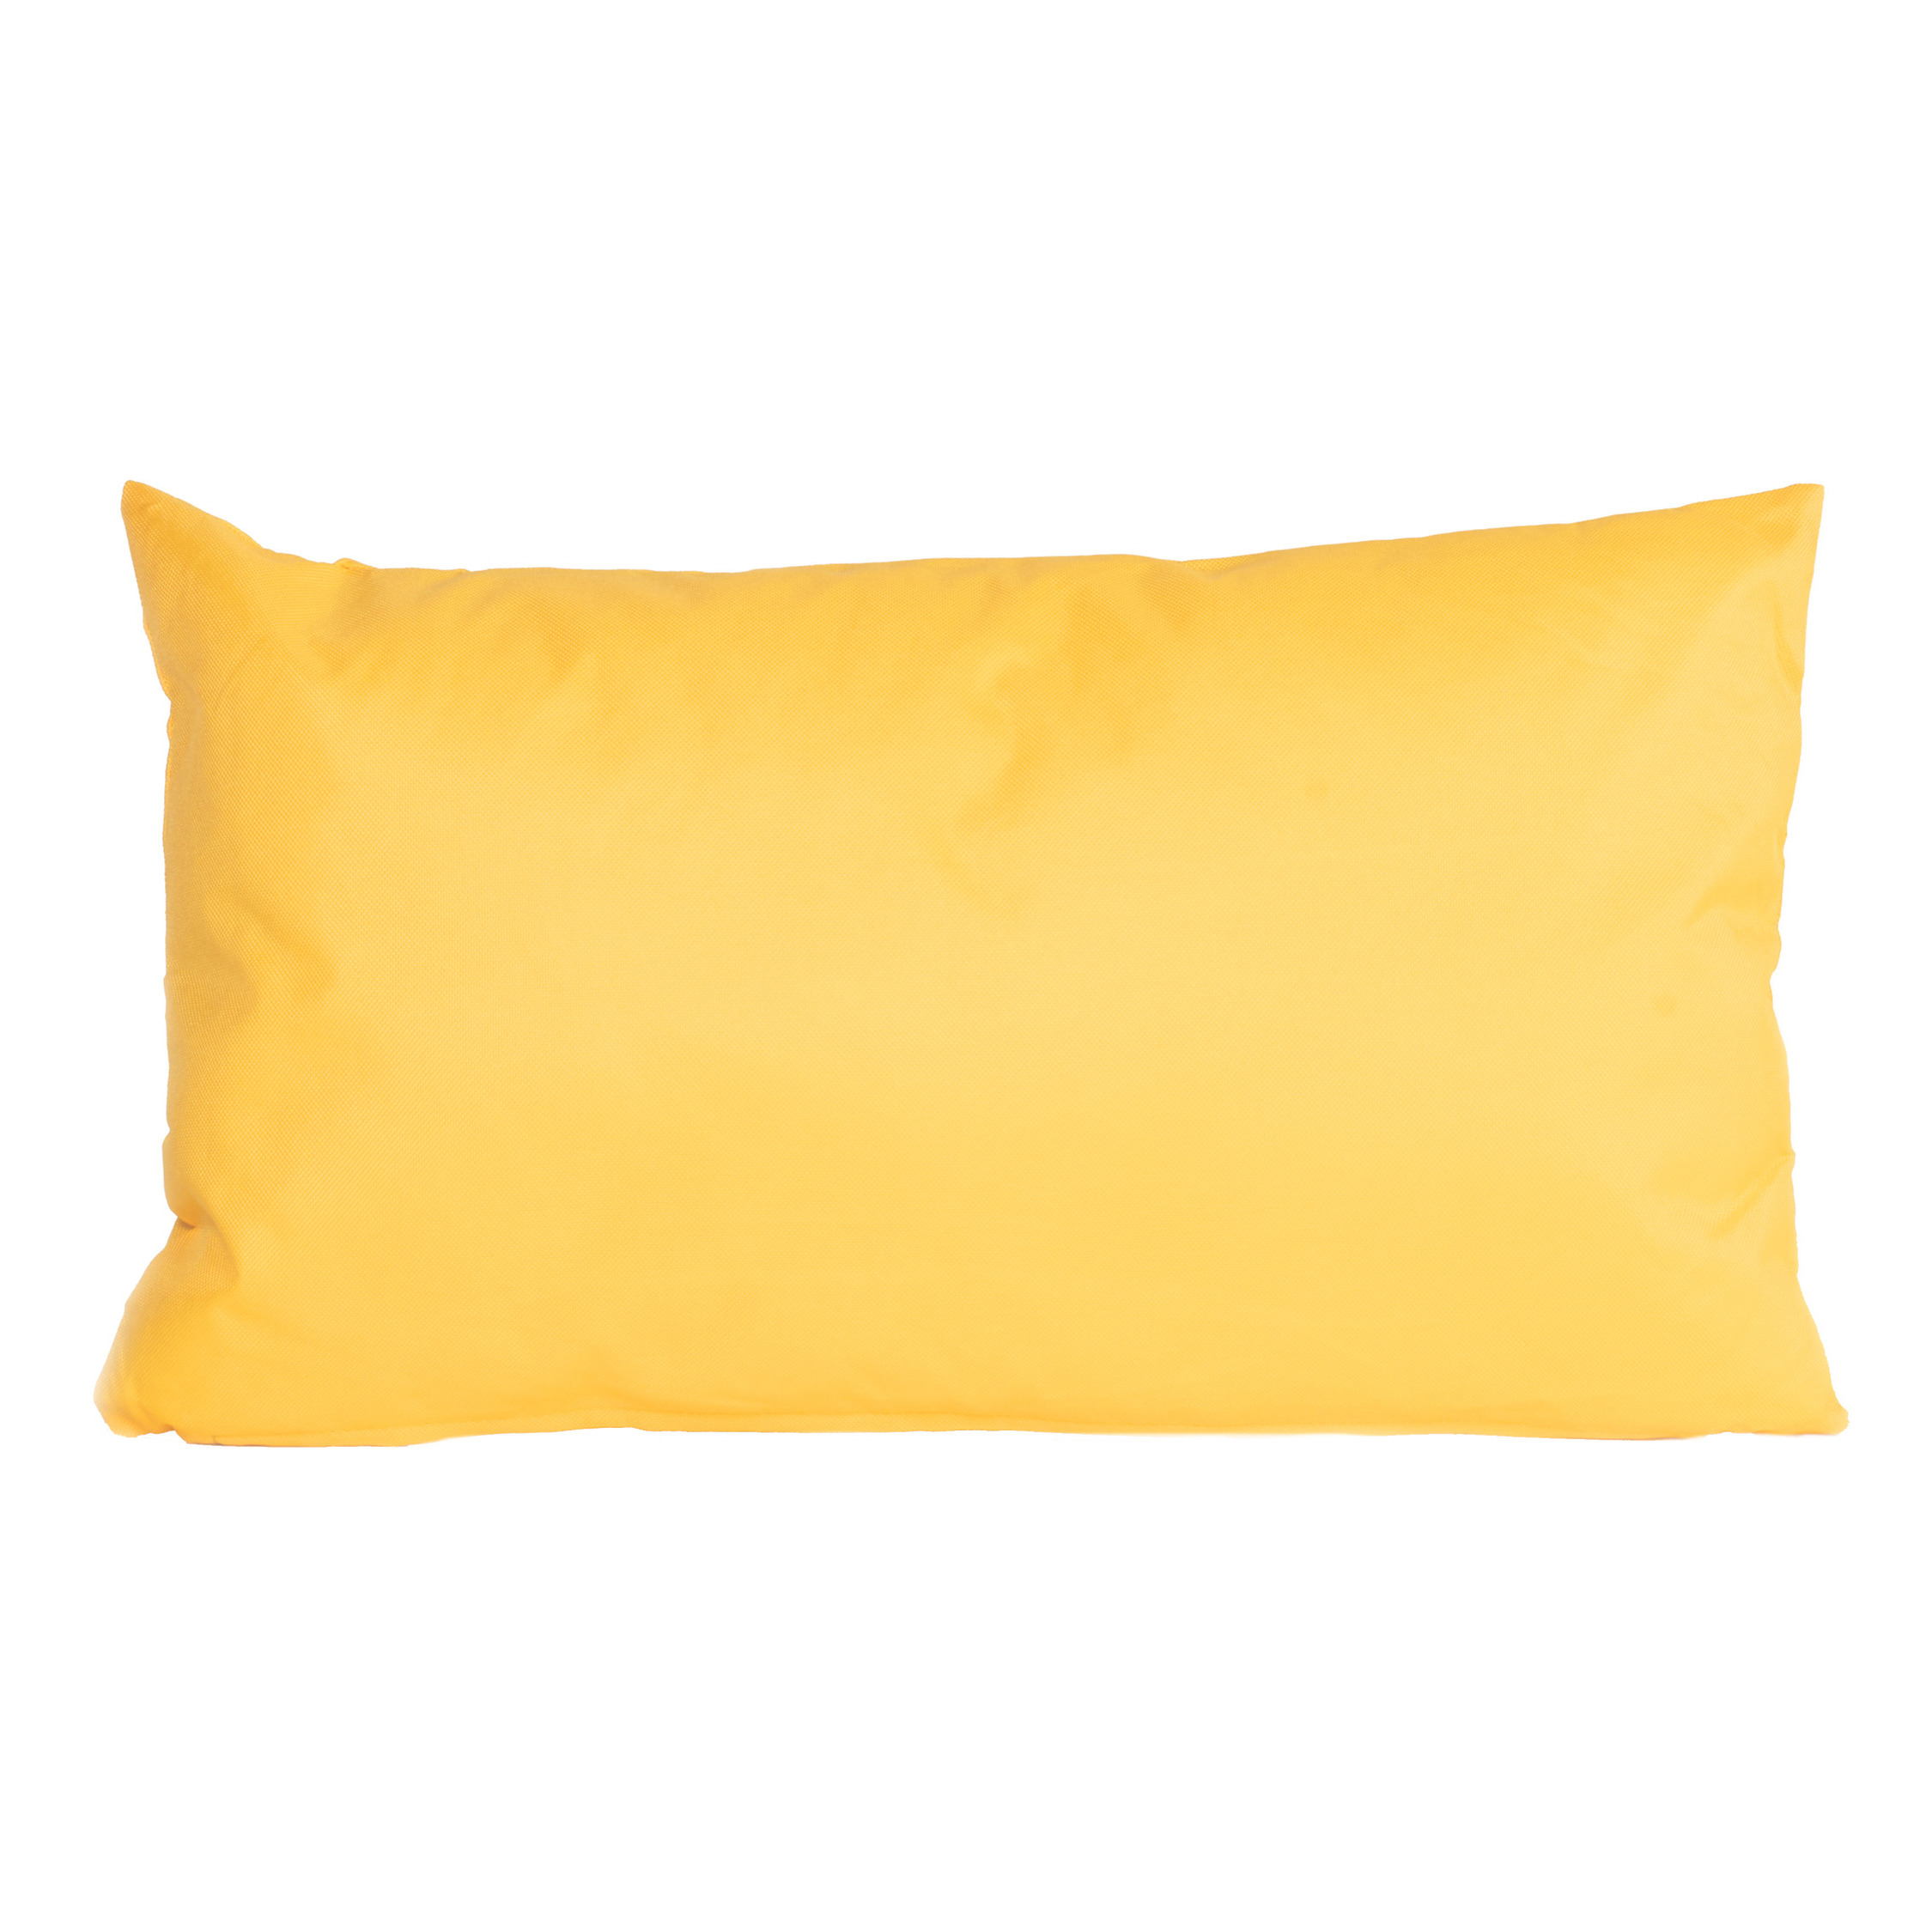 Buiten-woonkamer-slaapkamer kussens in het geel 30 x 50 cm